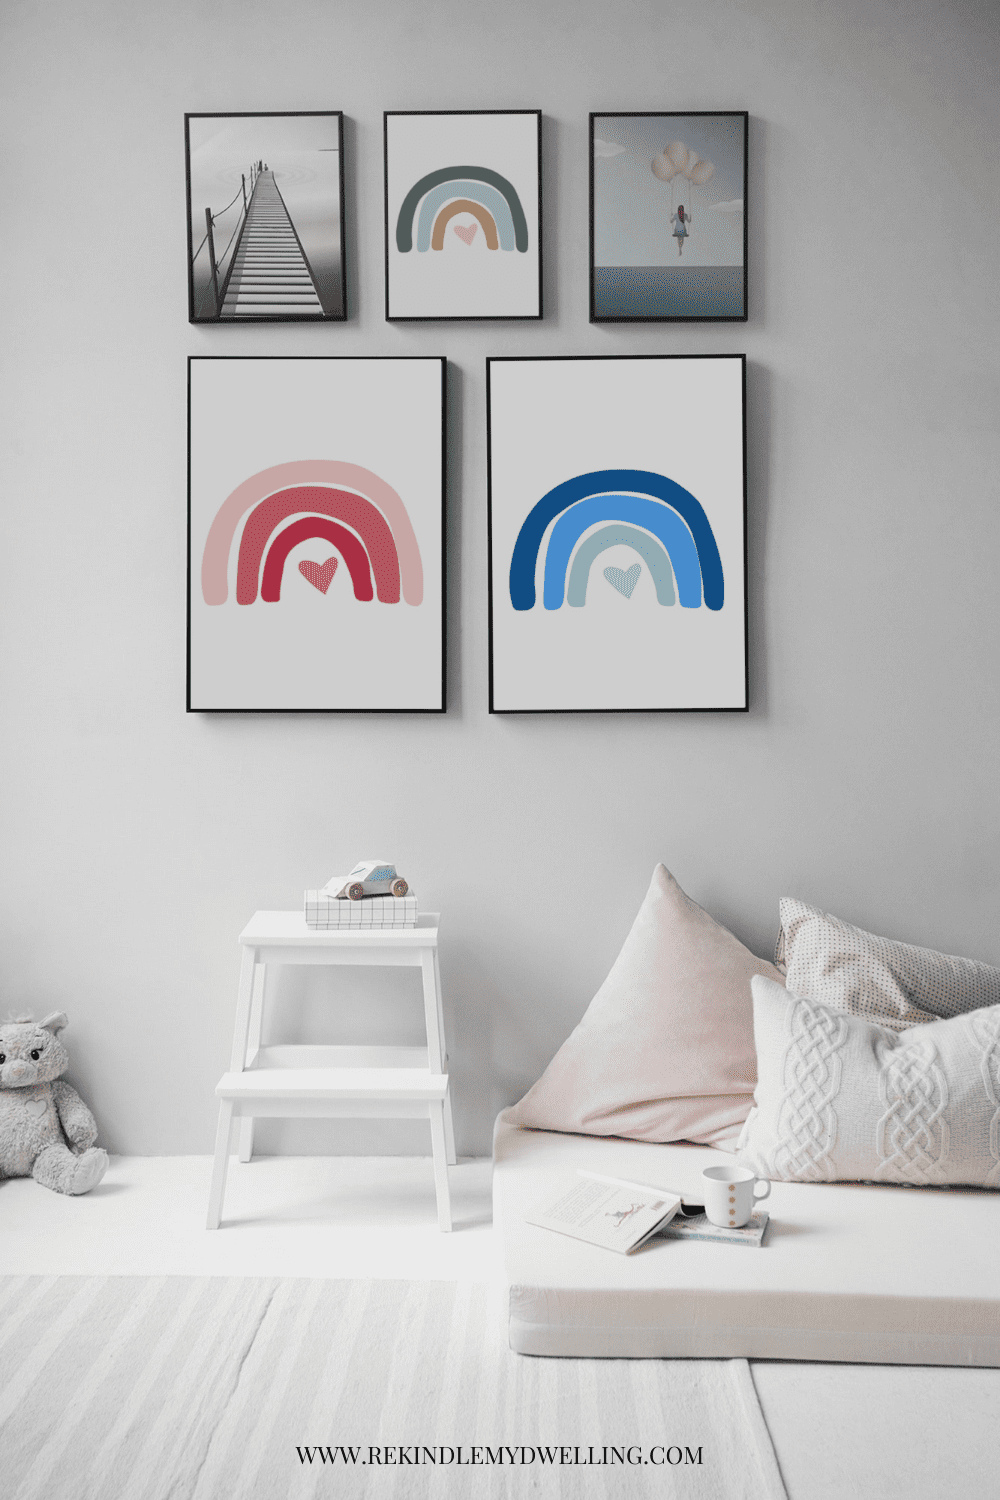 Free rainbow printable art in frames in a kids bedroom.